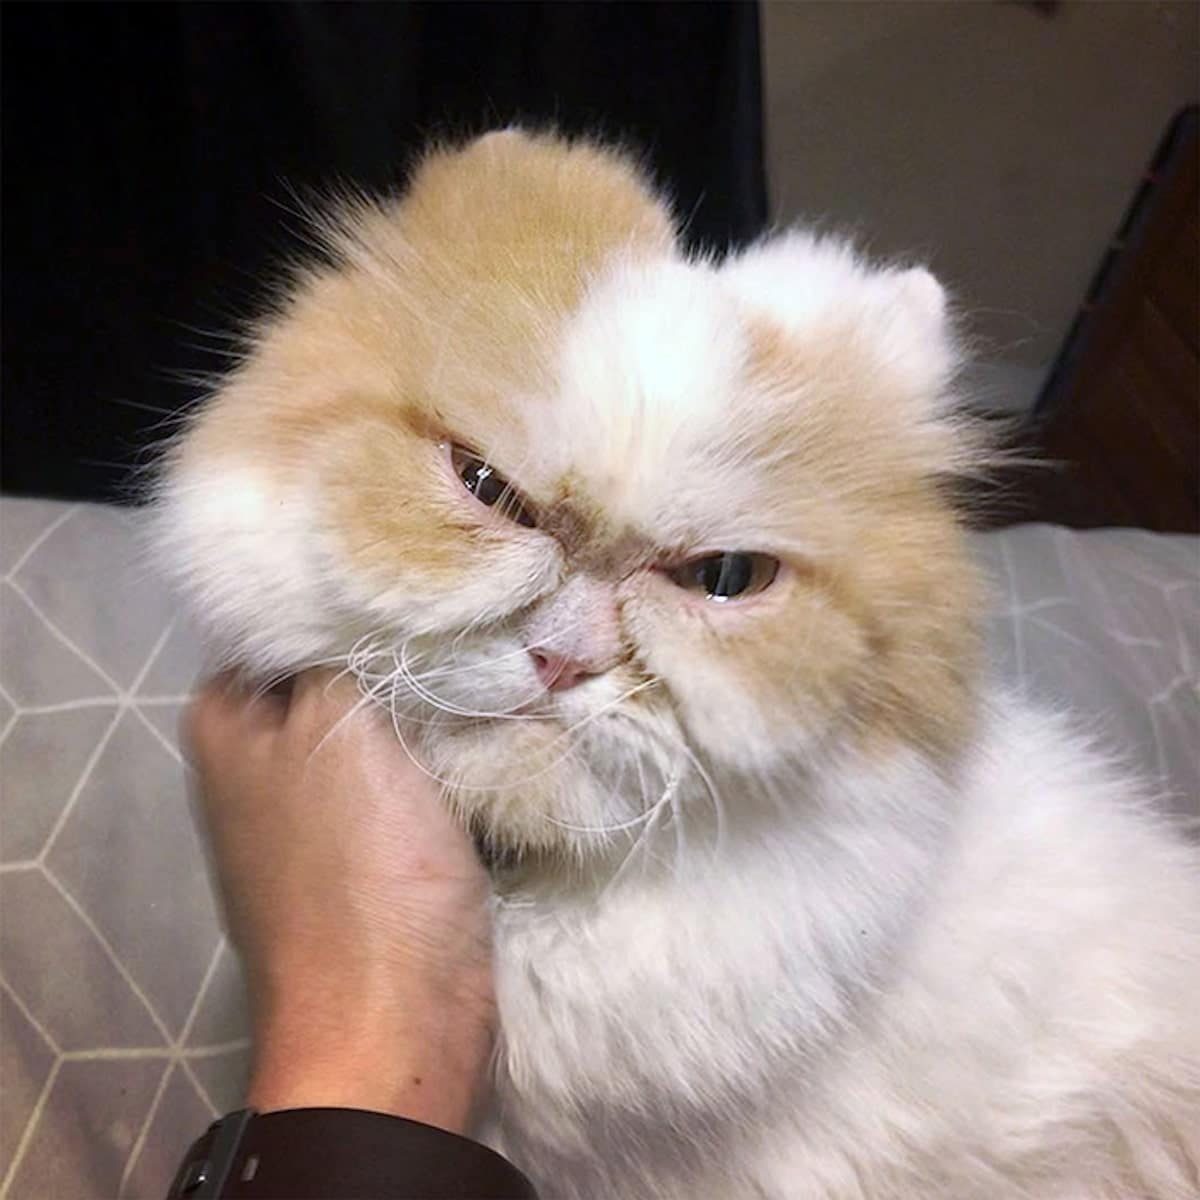 一目見たら忘れられない とてつもなく 怒り顔 の猫が話題に Buzzmag